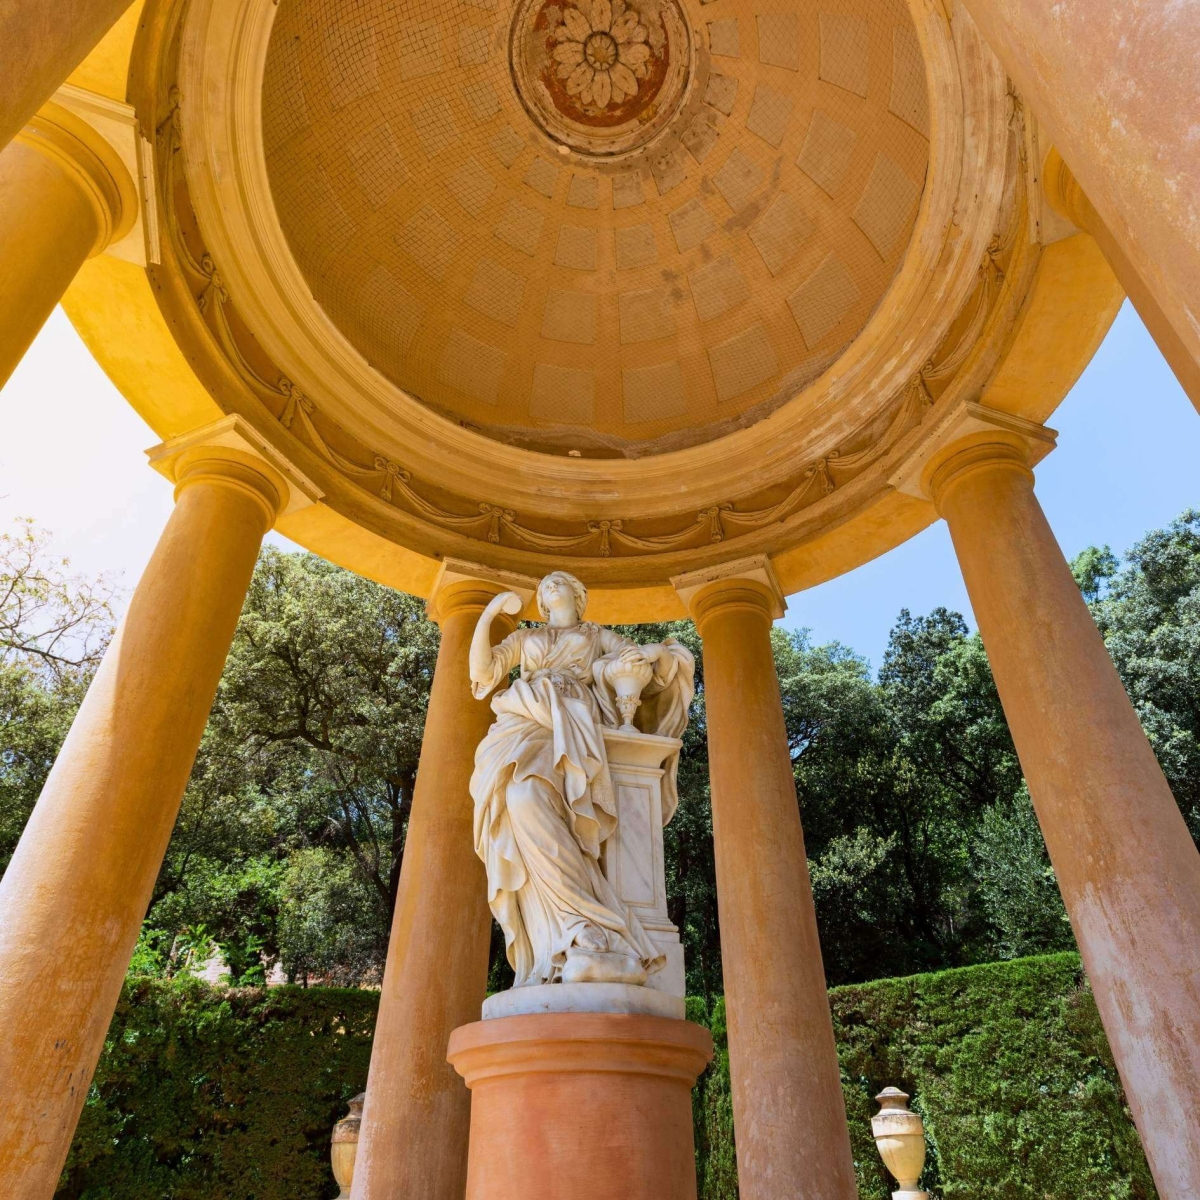 Павильон со скульптурой в парке Лабиринта Орта (Parc del Laberint d'Horta) в Барселоне, Испания